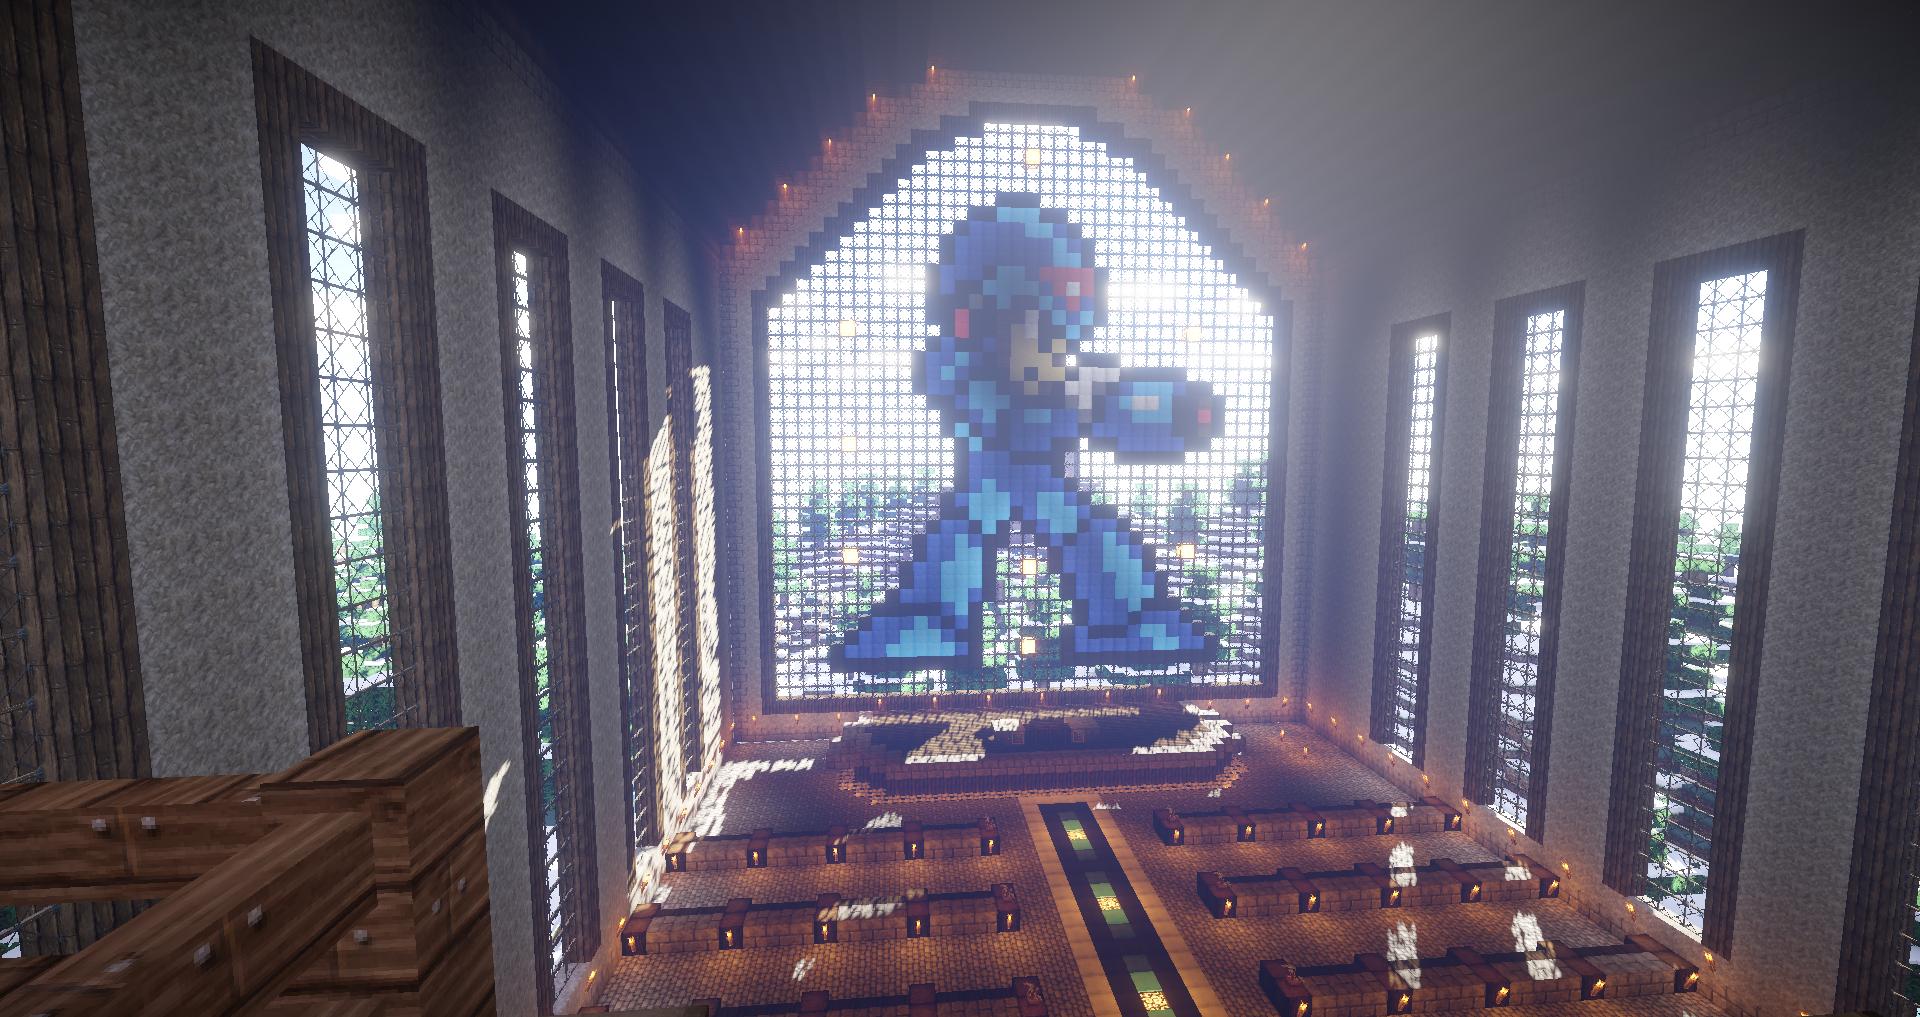 Mega Man Church